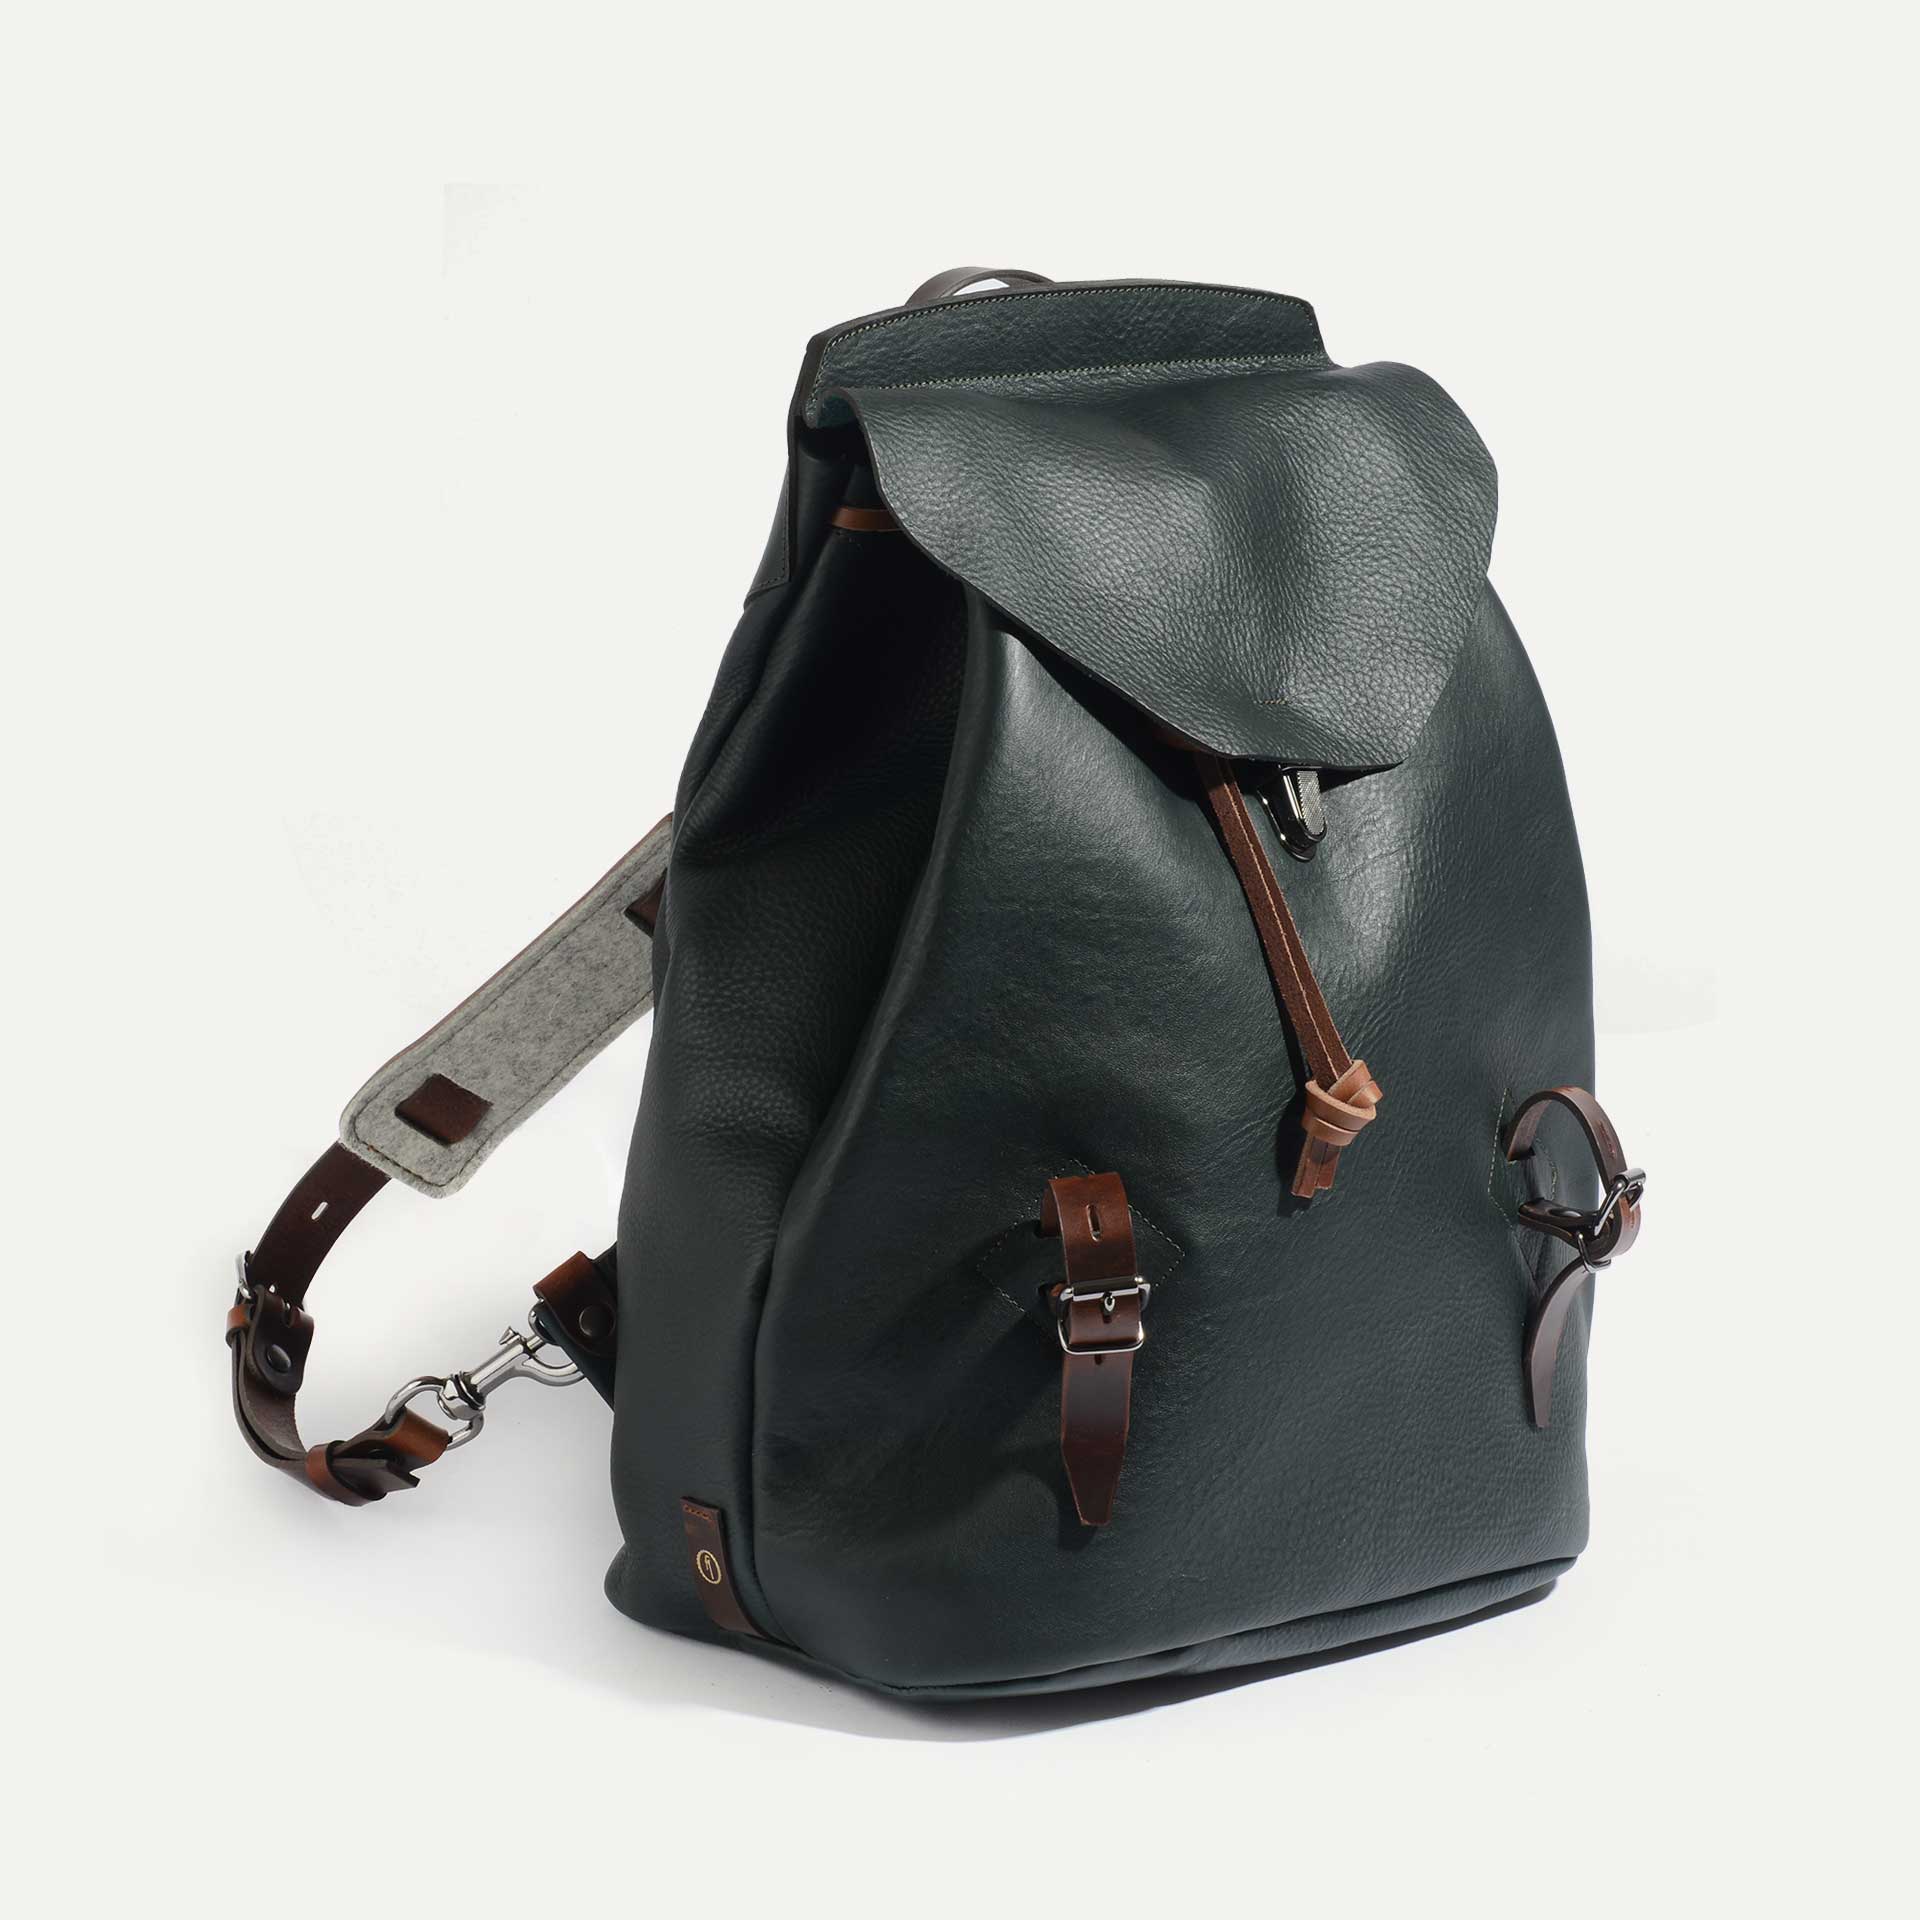 ZIBELINE backpack